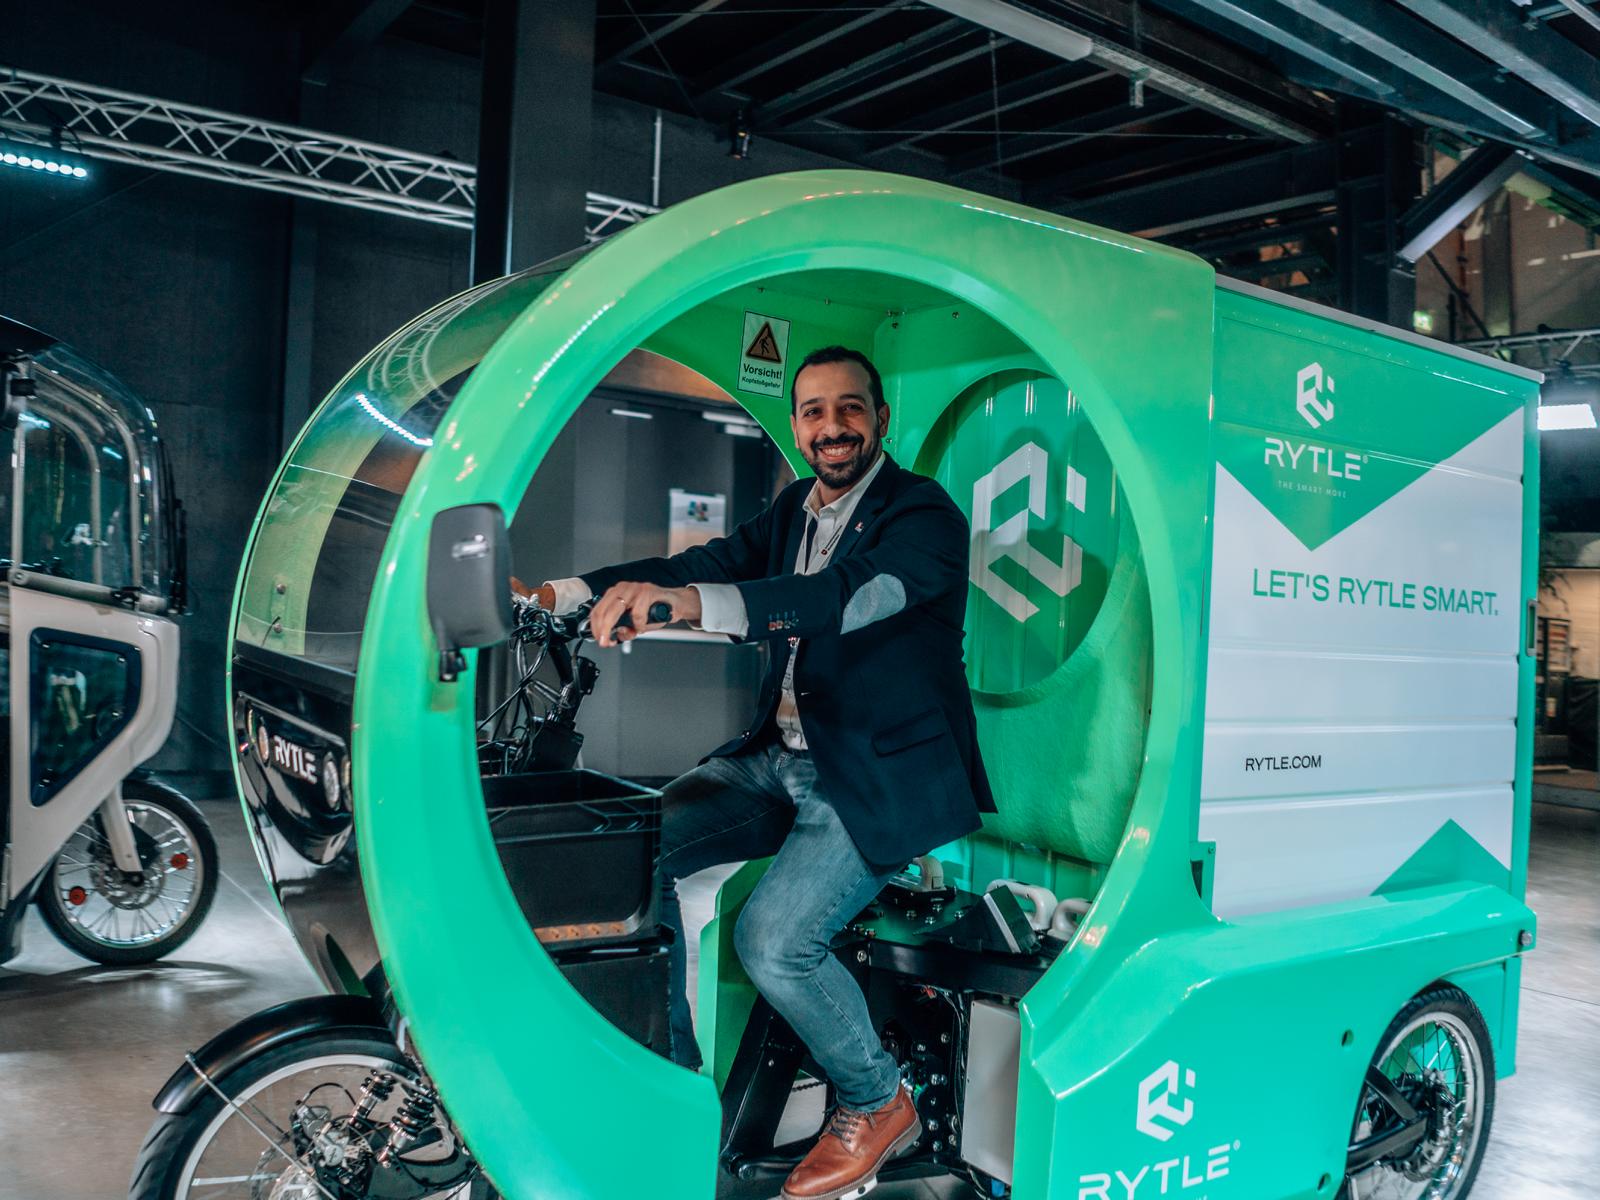 Barkin Özkaya von der Automotive Agentur am Steuer eines grünen E-Cargo Bikes